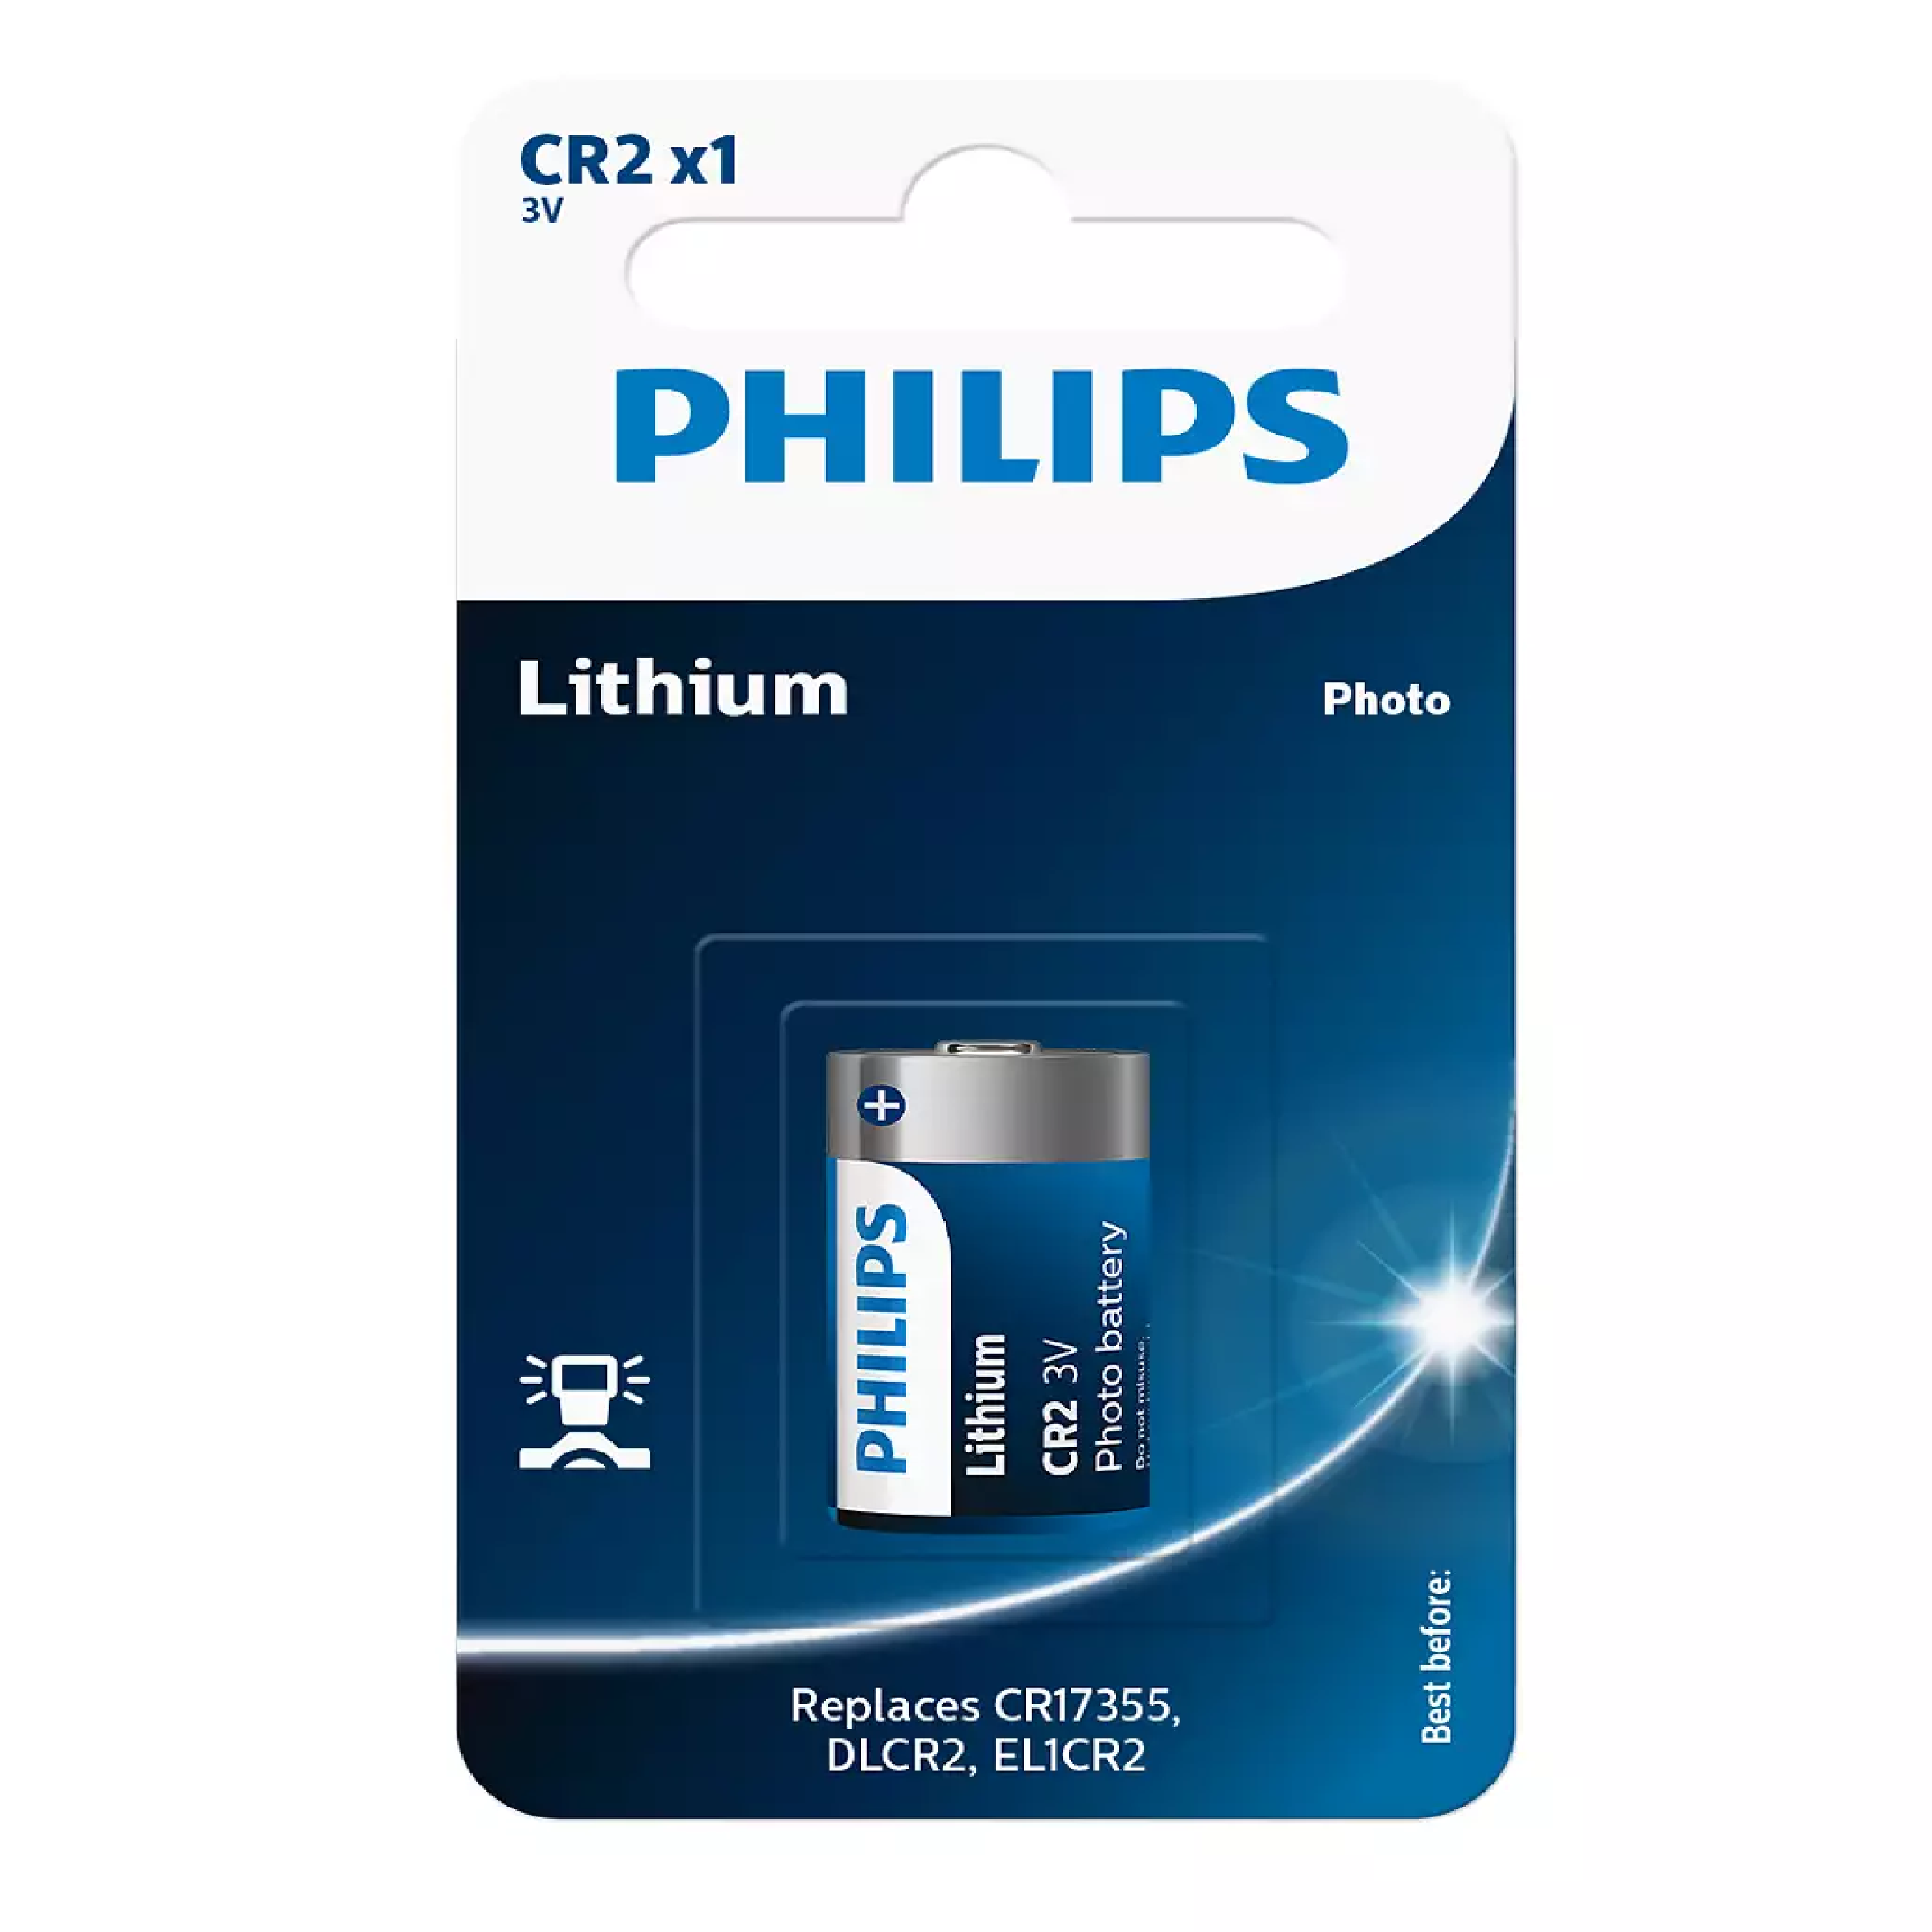 Philips CR2 Lithium 3V Battery